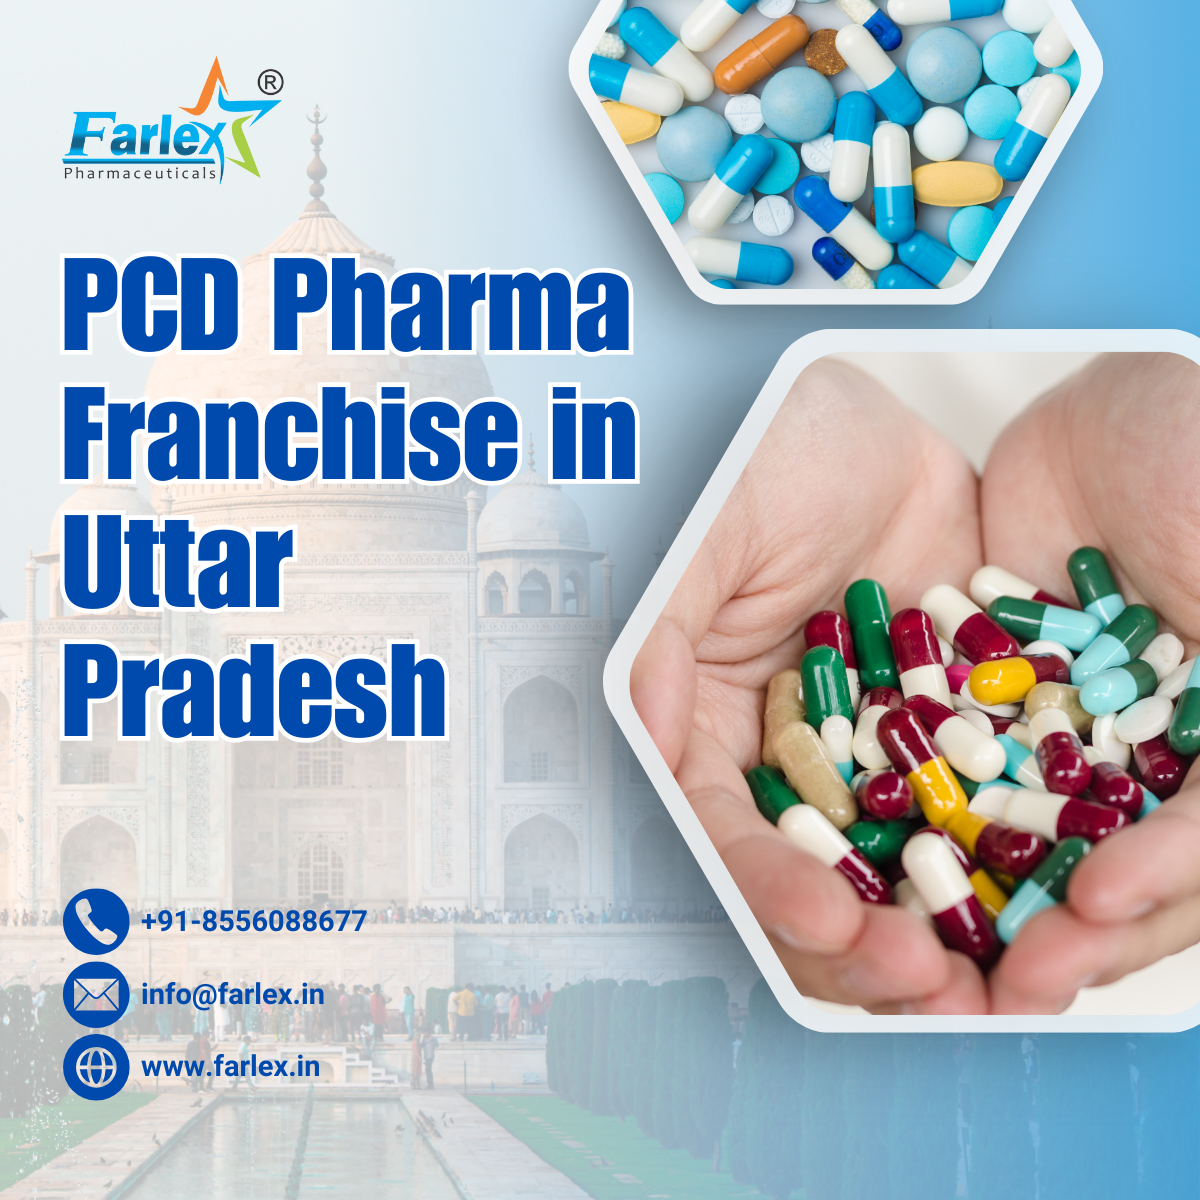 citriclabs | PCD Pharma Franchise in Uttar Pradesh